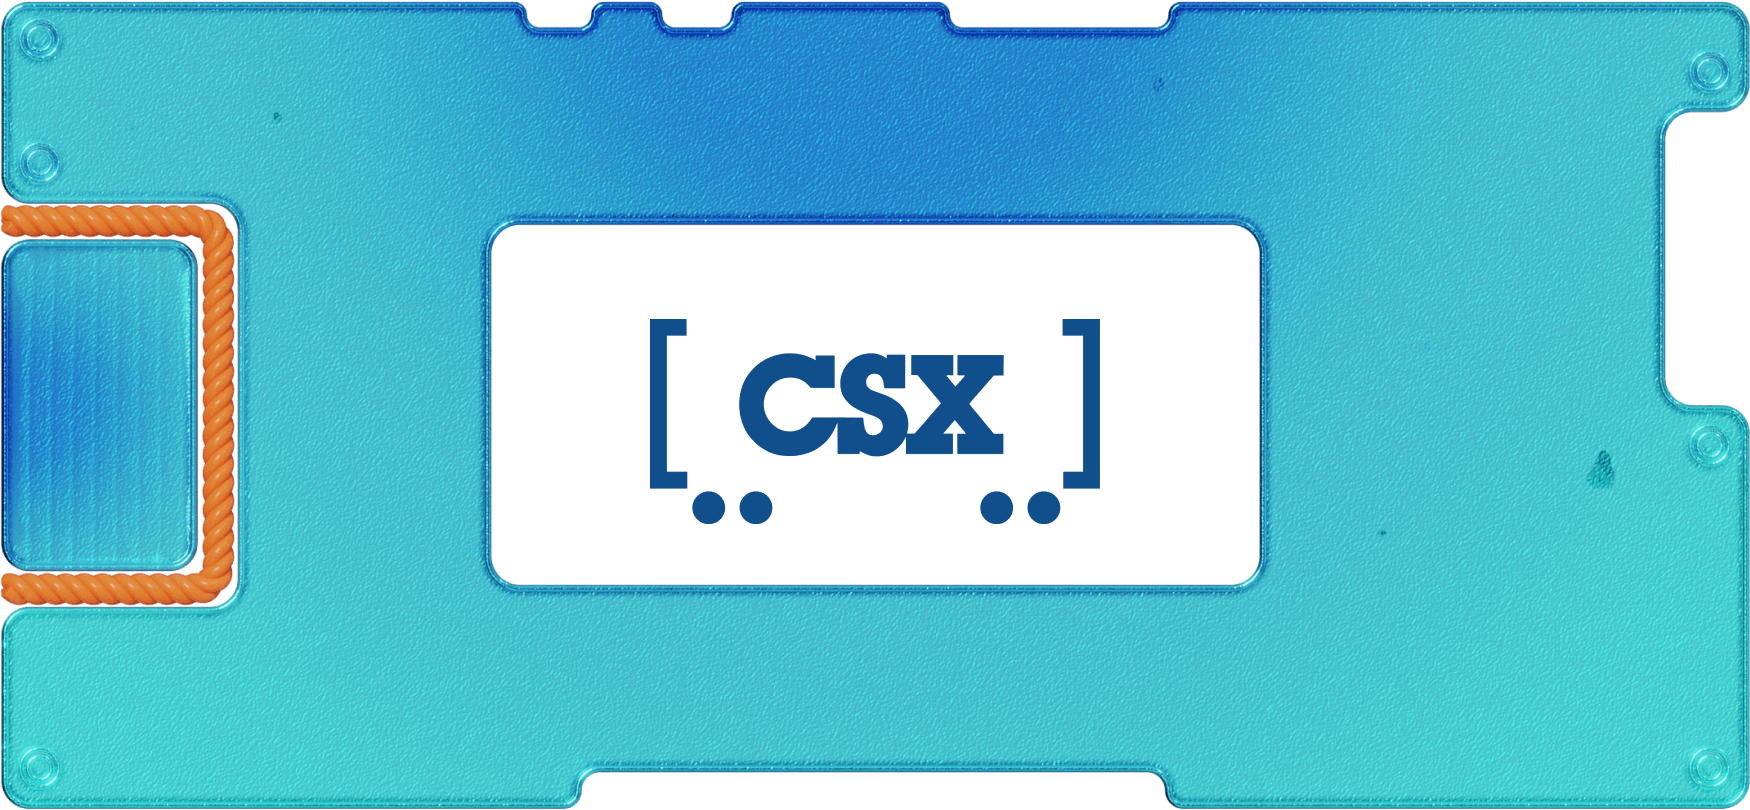 Обзор CSX: крупный железнодорожный оператор